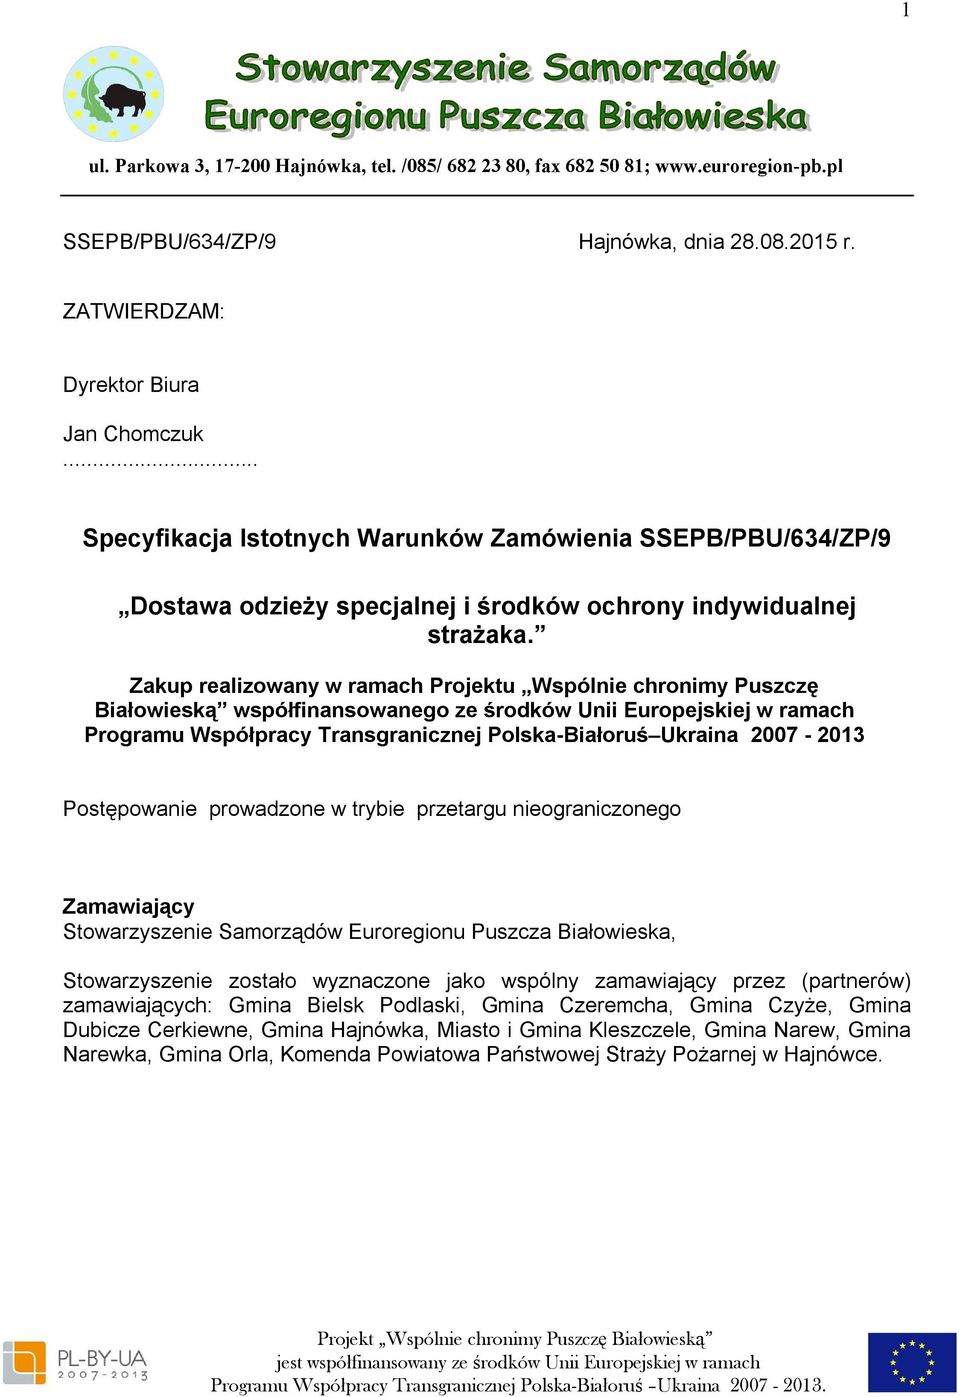 Zakup realizowany w ramach Projektu Wspólnie chronimy Puszczę Białowieską współfinansowanego ze środków Unii Europejskiej w ramach Programu Współpracy Transgranicznej Polska-Białoruś Ukraina